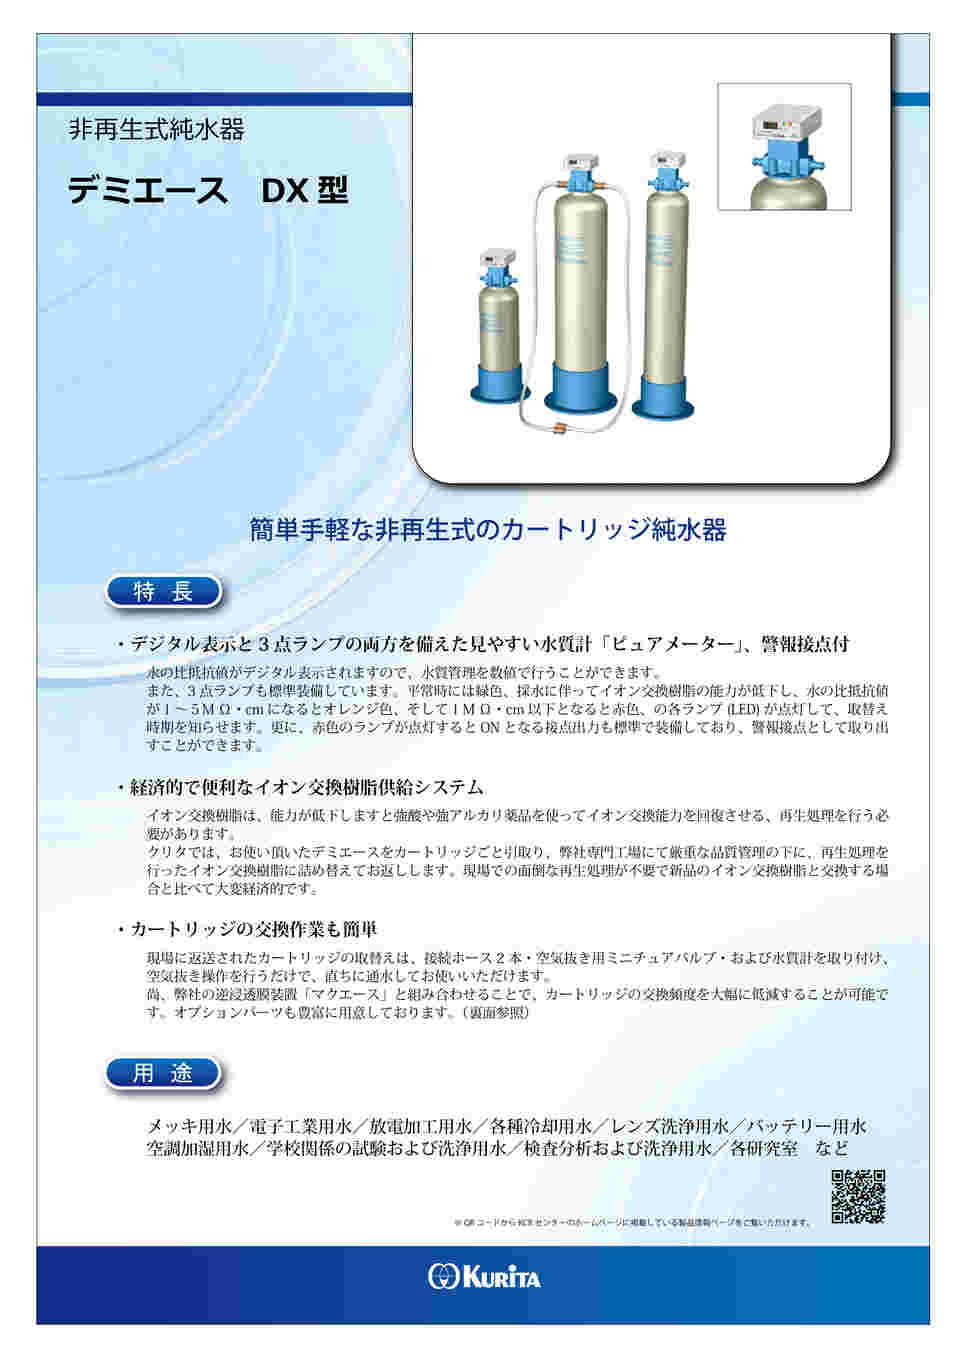 1-3134-01 カートリッジ純水器 デミエース DX-07型 【AXEL】 アズワン